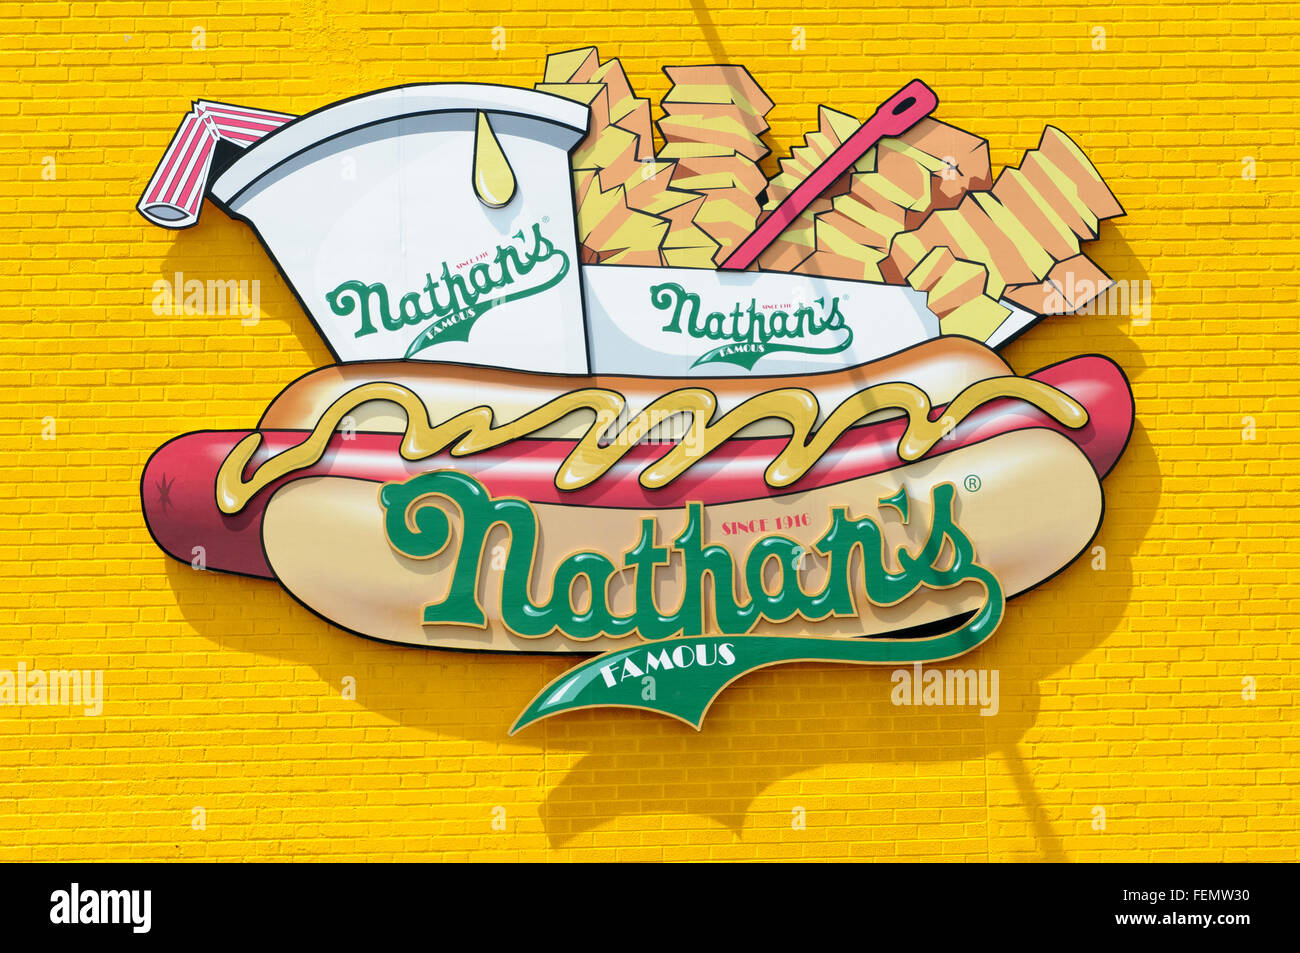 Nathan's Famous Inc. unterzeichnen auf gelb lackierten Ziegel Hintergrund, Coney Island, Brooklyn, New York City, USA Stockfoto